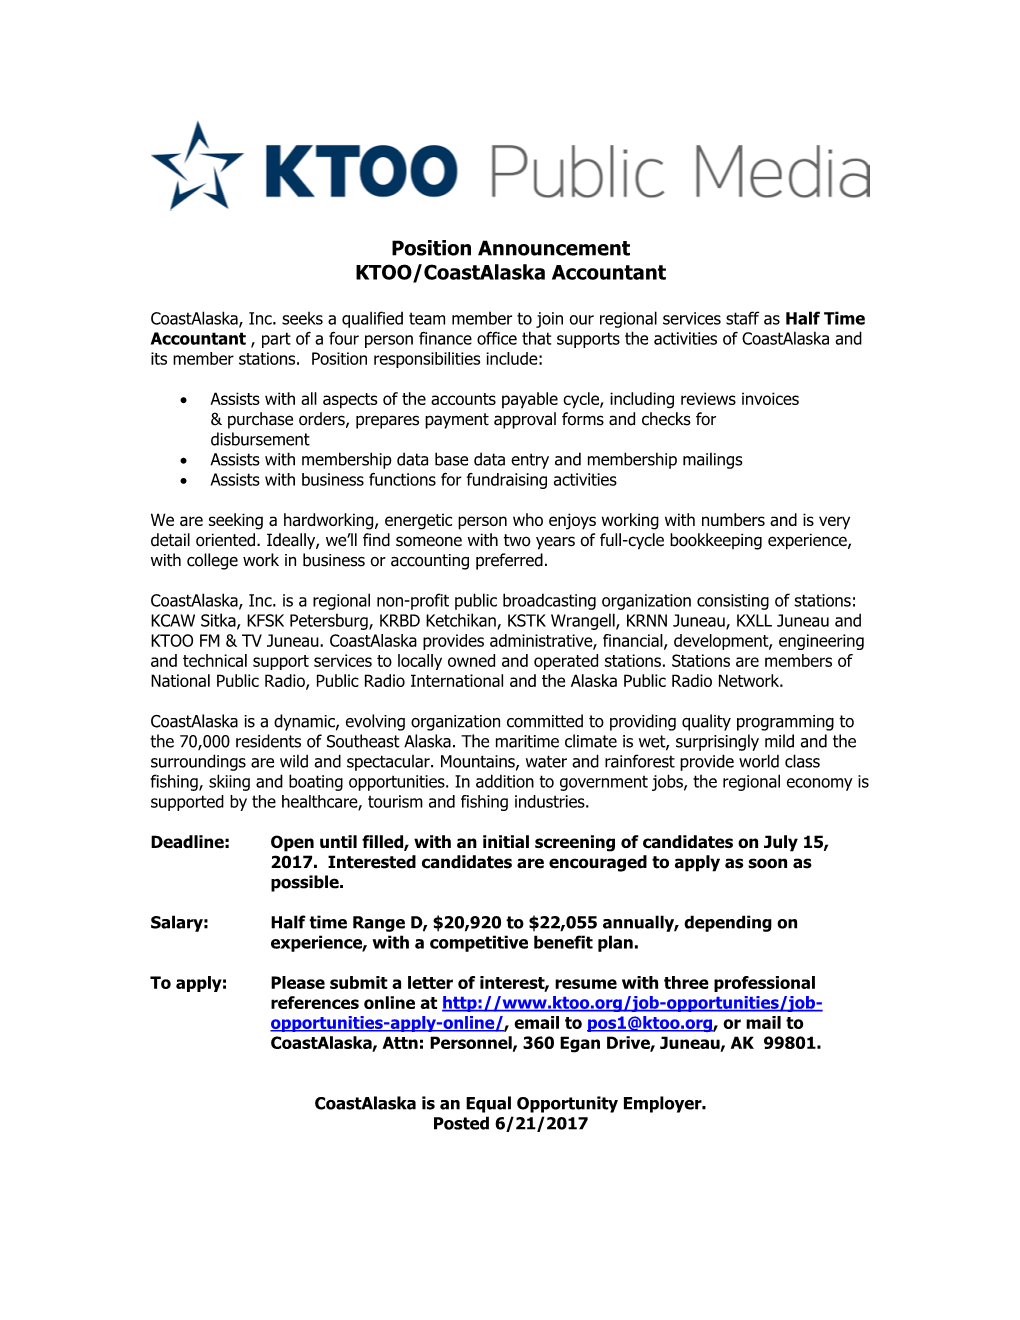 Position Announcement KTOO/Coastalaska Accountant